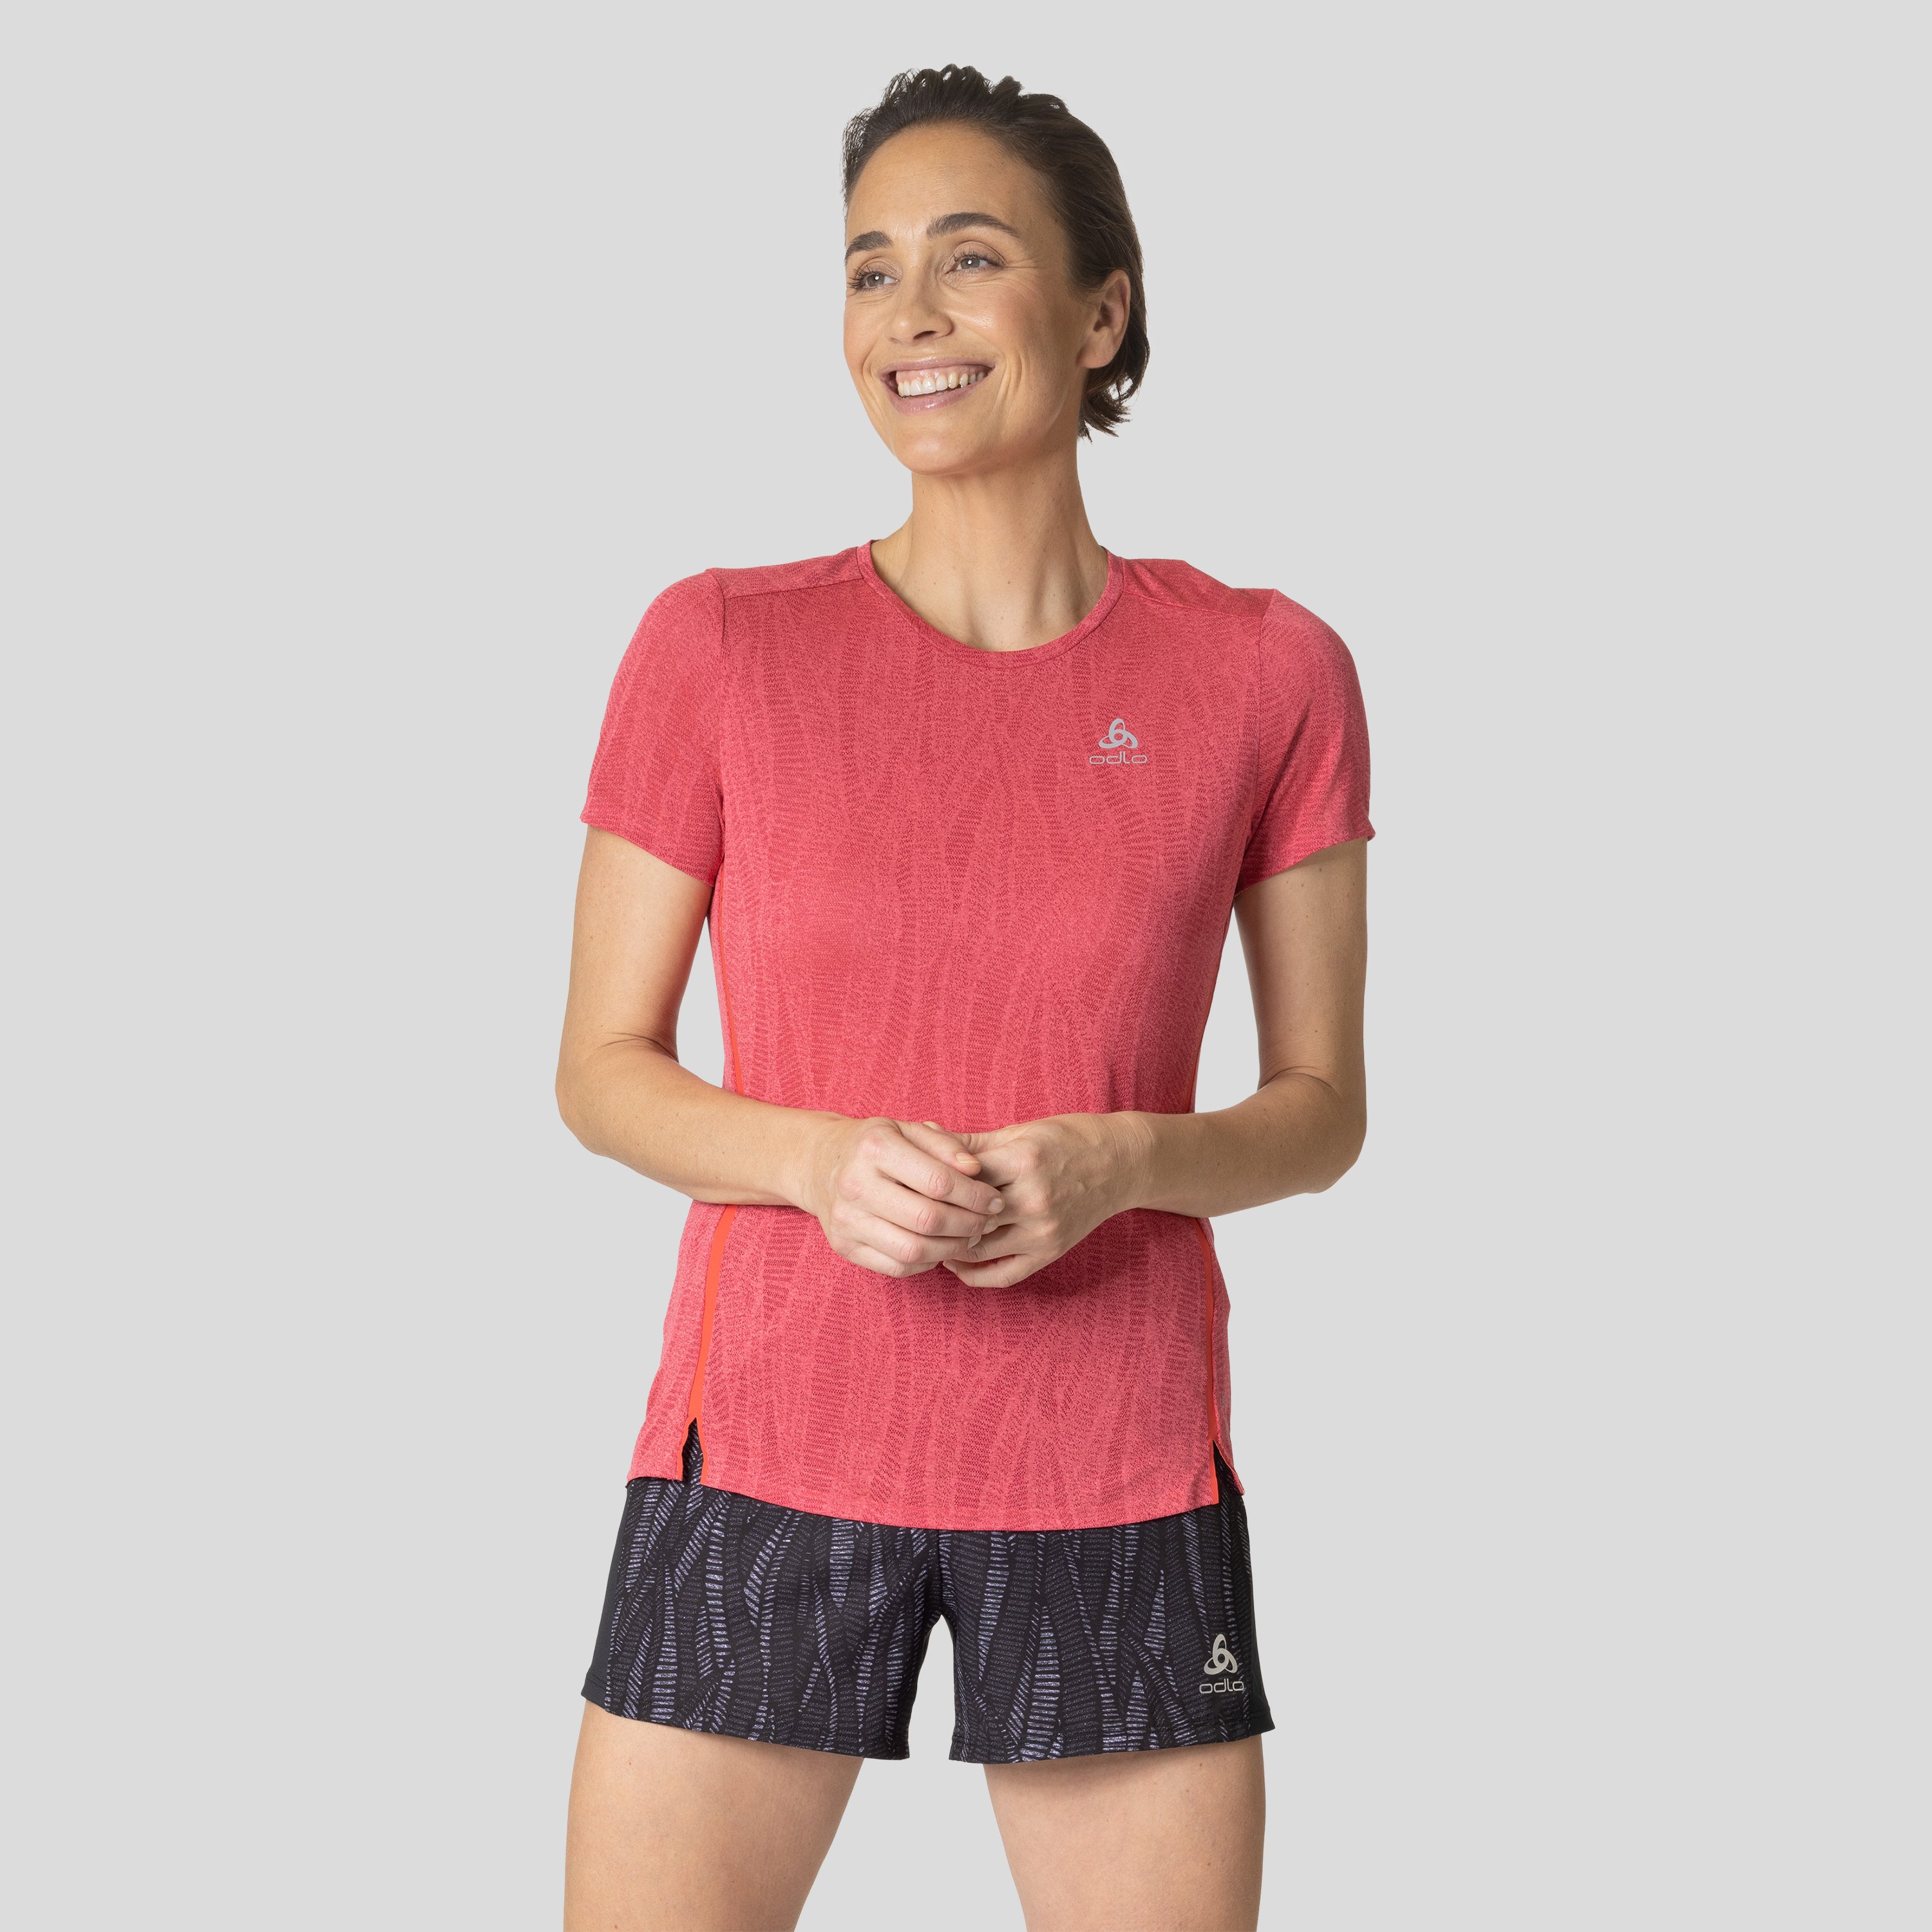 ODLO Zeroweight Engineered Chill-Tec Laufshirt für Damen, XL, rot